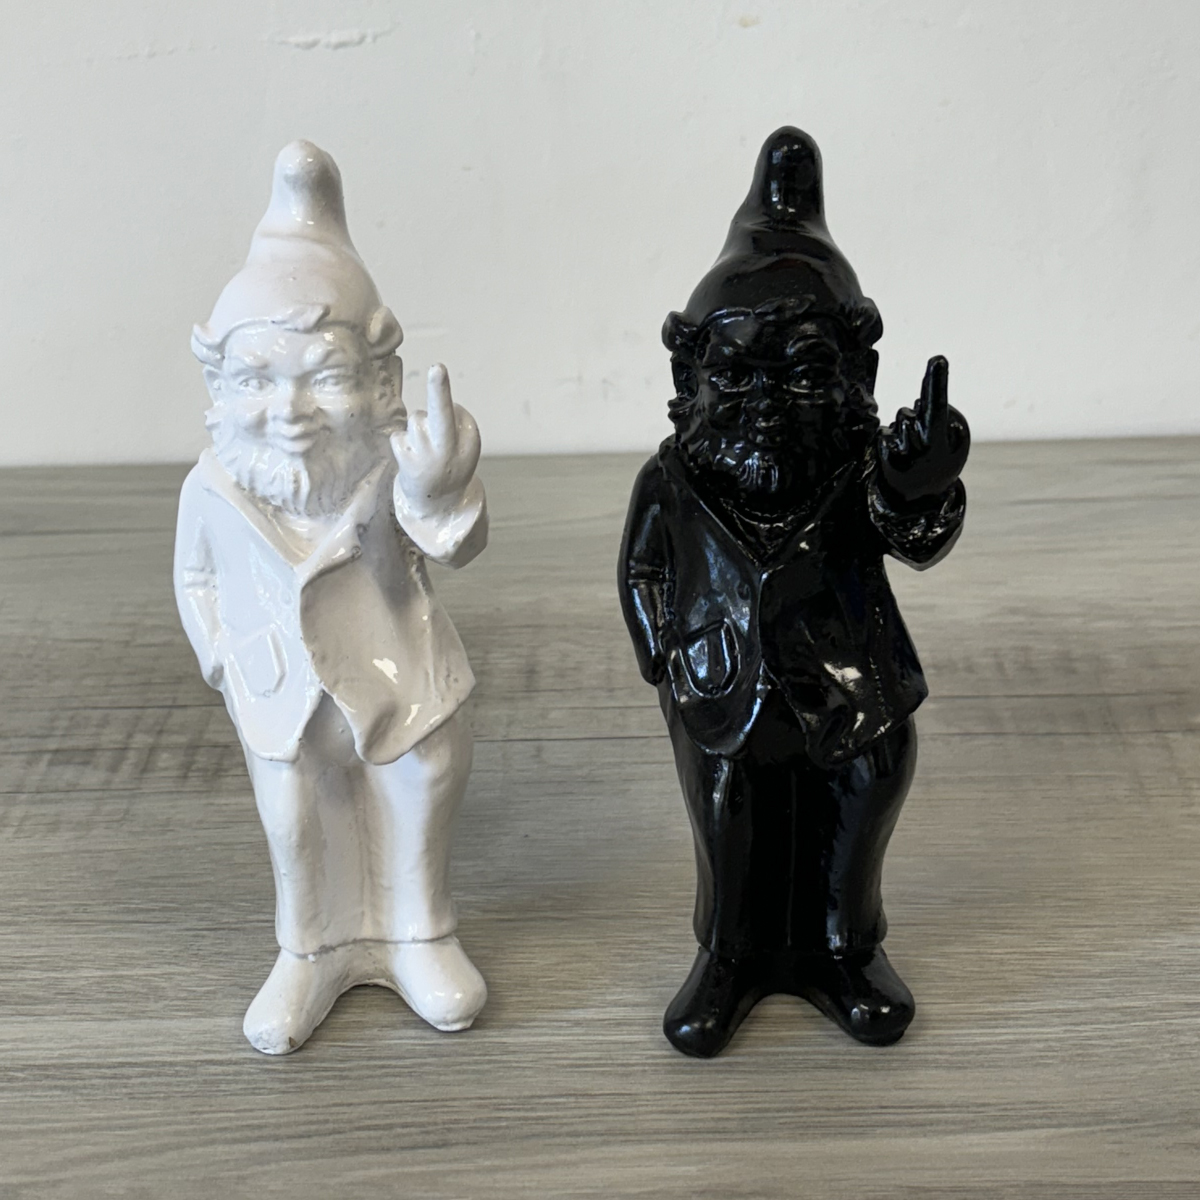 Petite statue en rsine Lutin grossier noire 19 cm